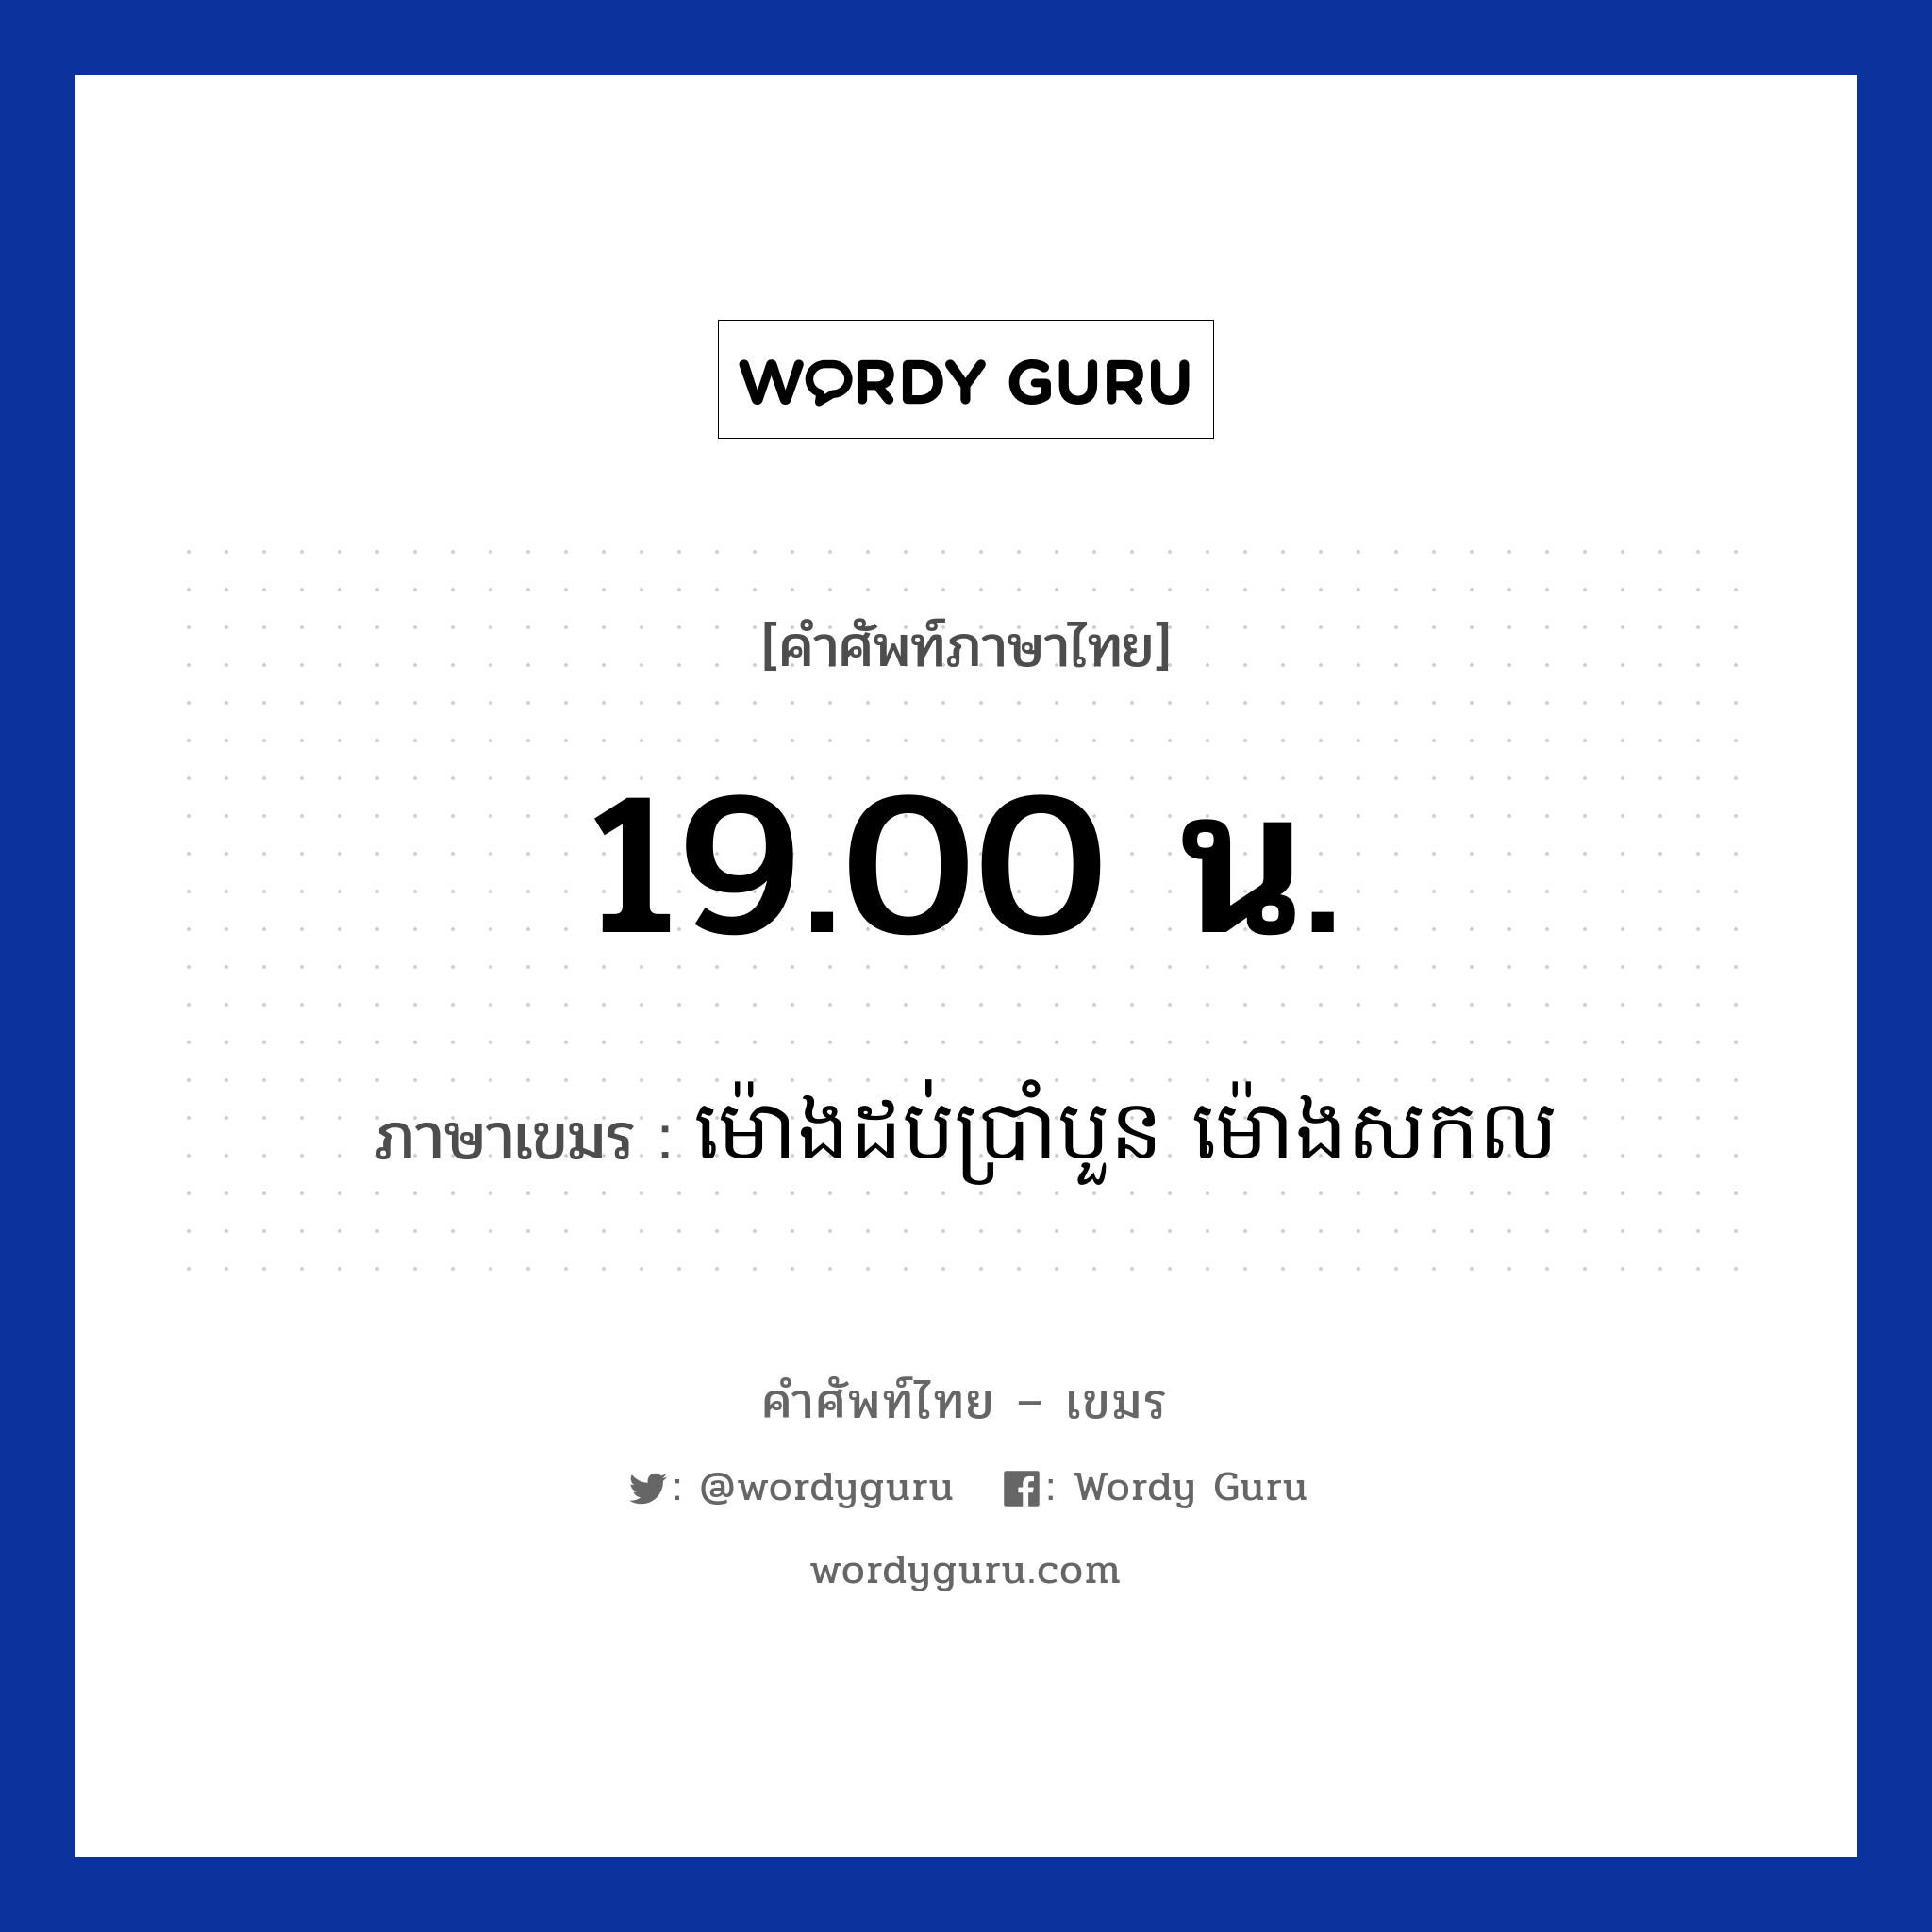 19.00 น. ภาษาเขมรคืออะไร, คำศัพท์ภาษาไทย - เขมร 19.00 น. ภาษาเขมร ម៉ោងដប់ប្រាំបួន​​ ម៉ោងសកល หมวด เวลา Mong dobbramboun mong sakkol หมวด เวลา